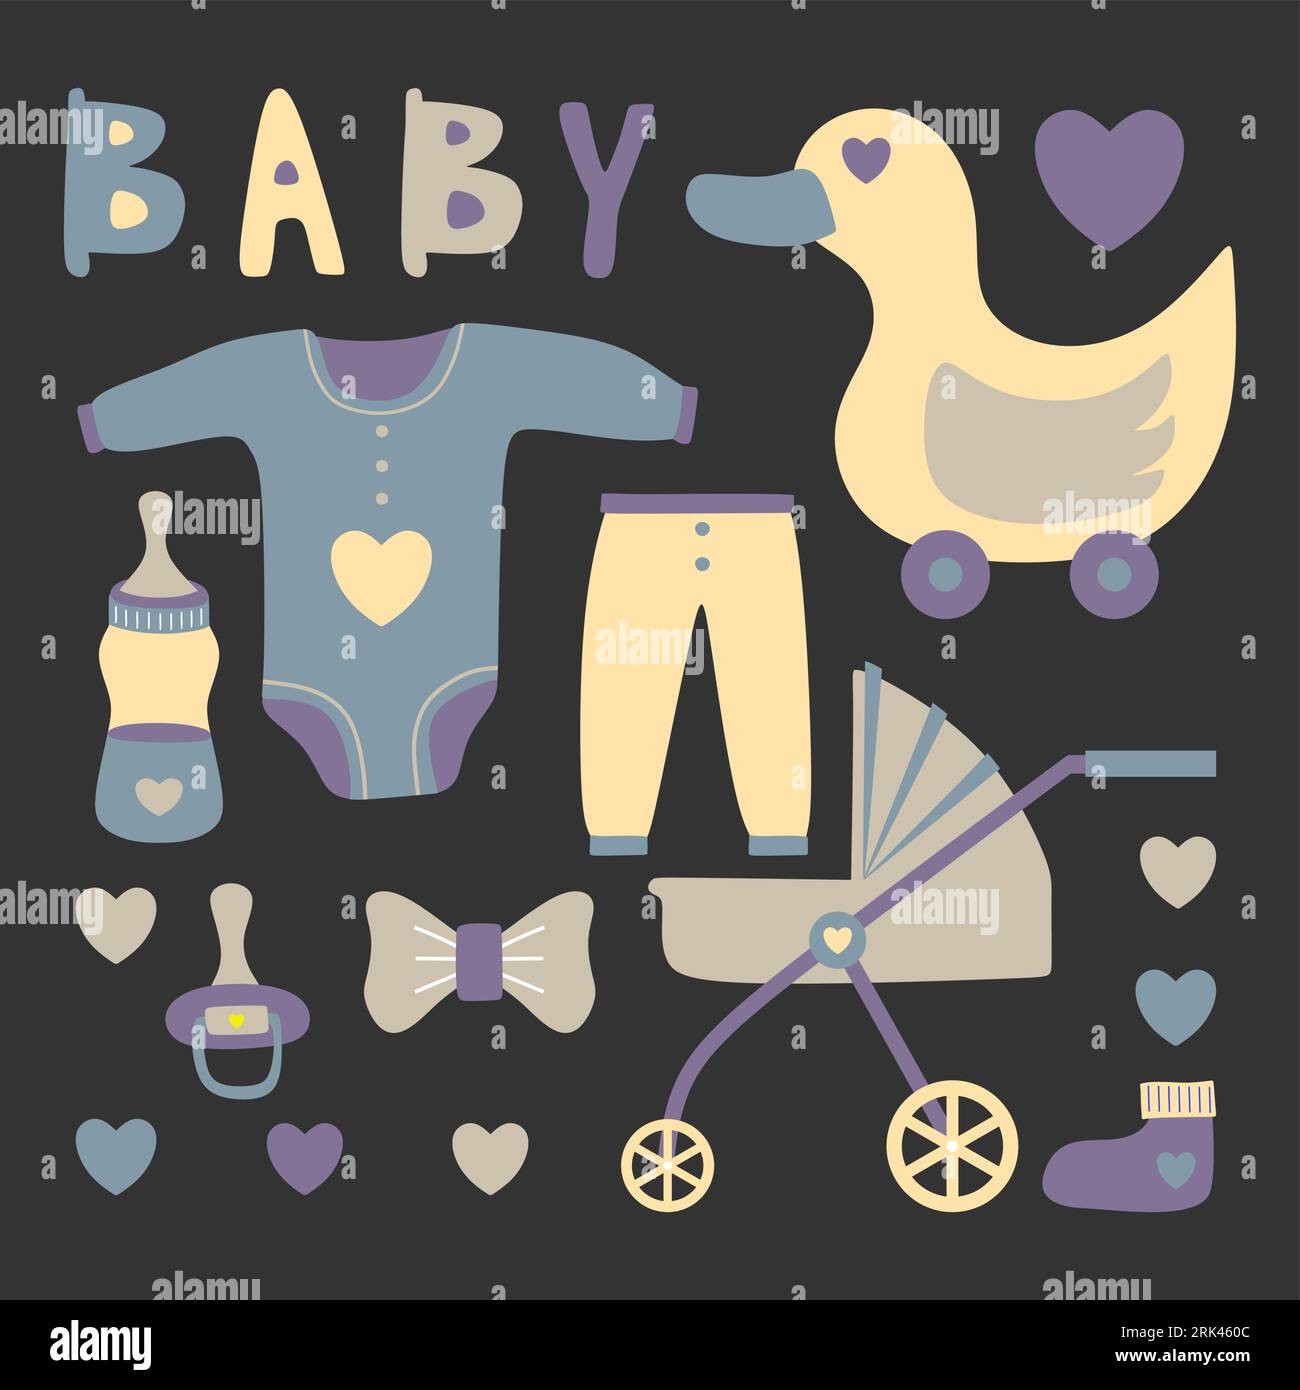 Set aus handgezeichneten Elementen mit Babyausstattung wie Punkt, Milchflasche, Kleidung, Ente, Klebeband, Kinderwagen und Liebessymbol isoliert auf schwarzem Hintergrund. Stock Vektor